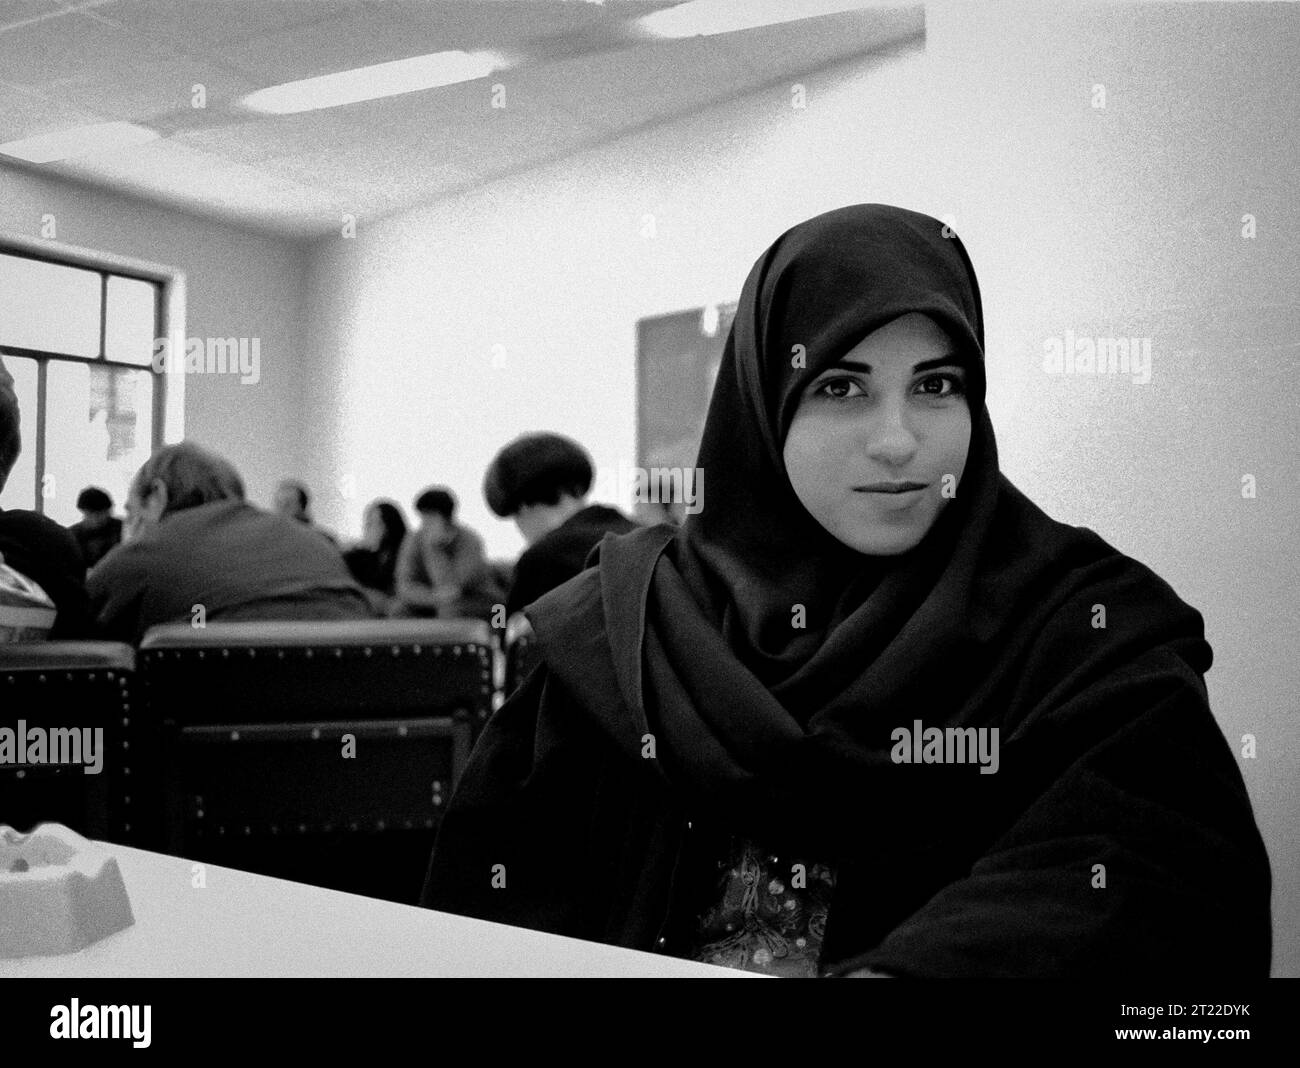 Palästina, Bethlehem: Ein palästinensischer Student in der palästinensischen Universität Bethlehem am Ende der ersten Intifada (1992) Stockfoto